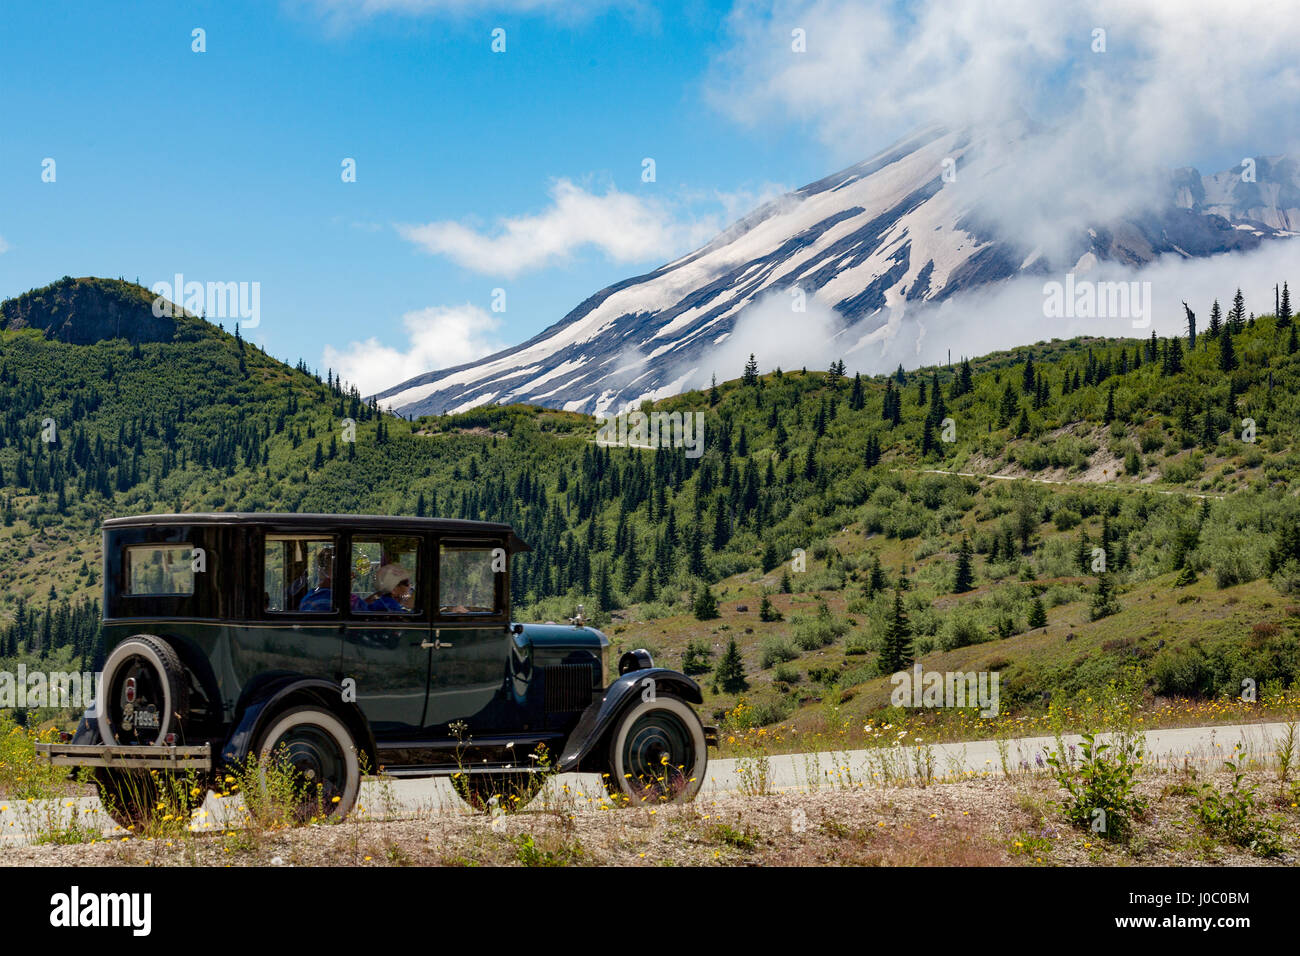 Splendidamente restaurata vintage americano auto passando il Monte Sant Helens, Pacific Northwest regione, stati di Washington, Stati Uniti d'America Foto Stock